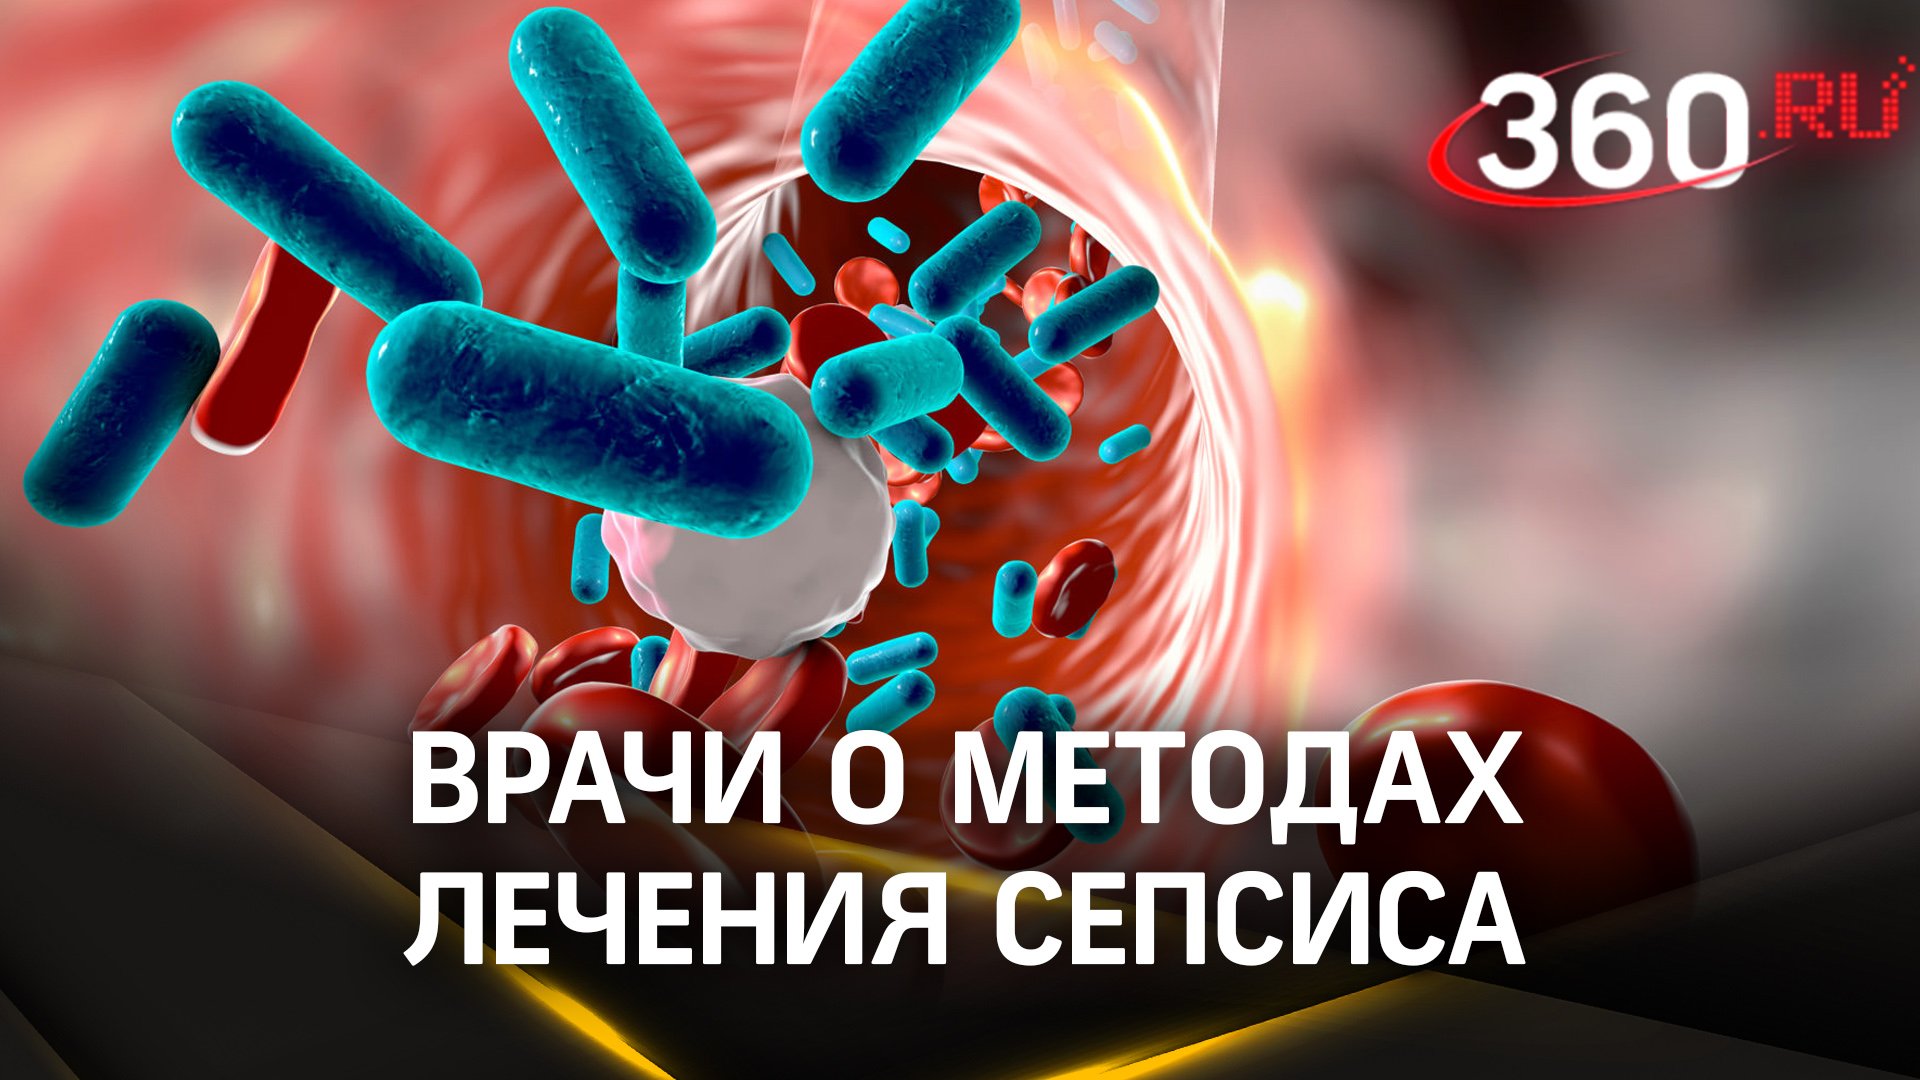 Быстро и эффективно: российские врачи рассказали о методах лечения сепсиса в полевых условиях